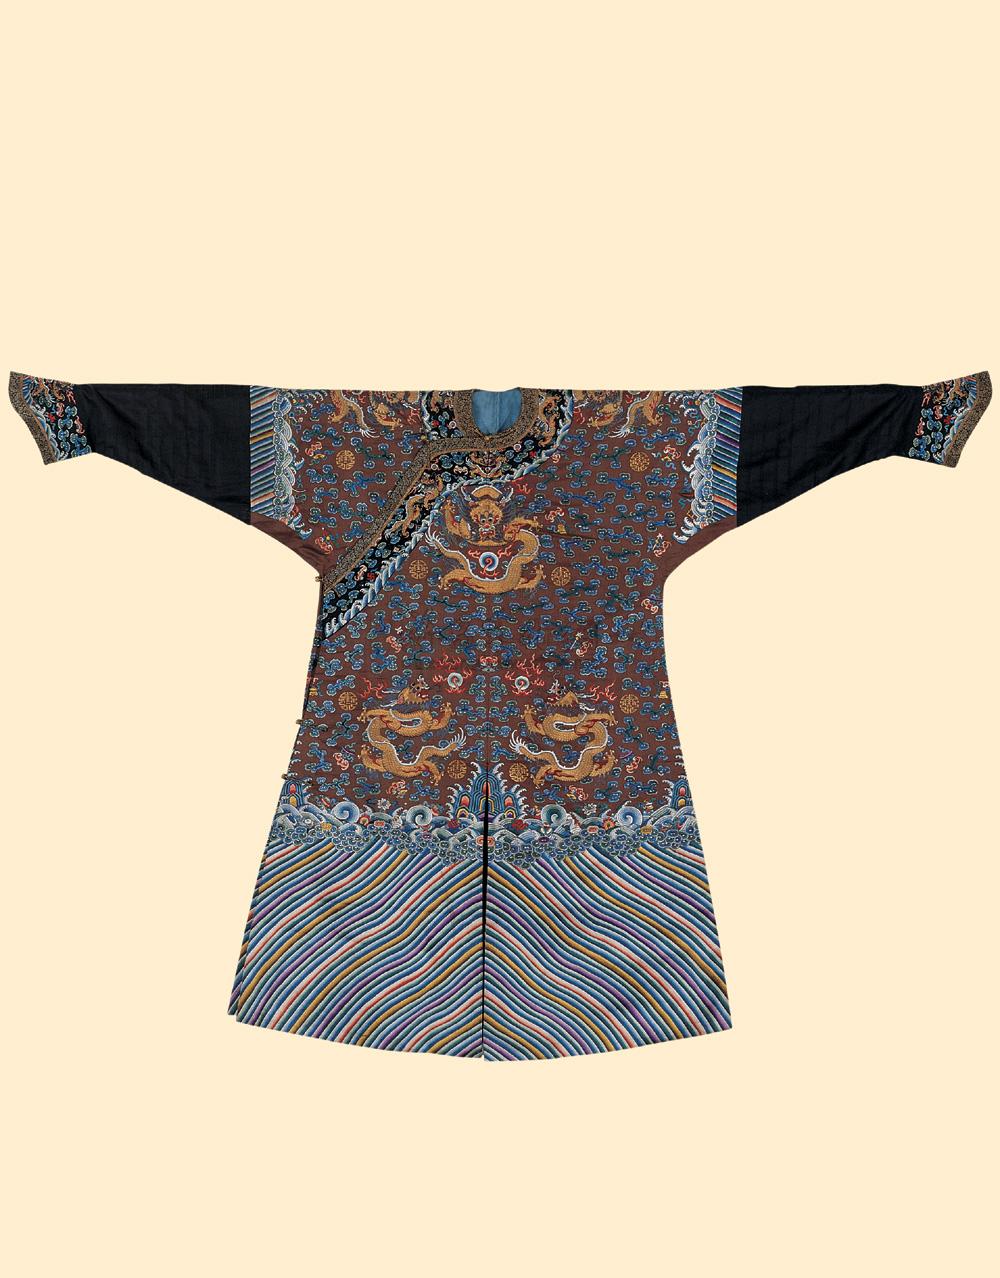 1651 清中期 绛色缎地云蝠庆寿蟒袍